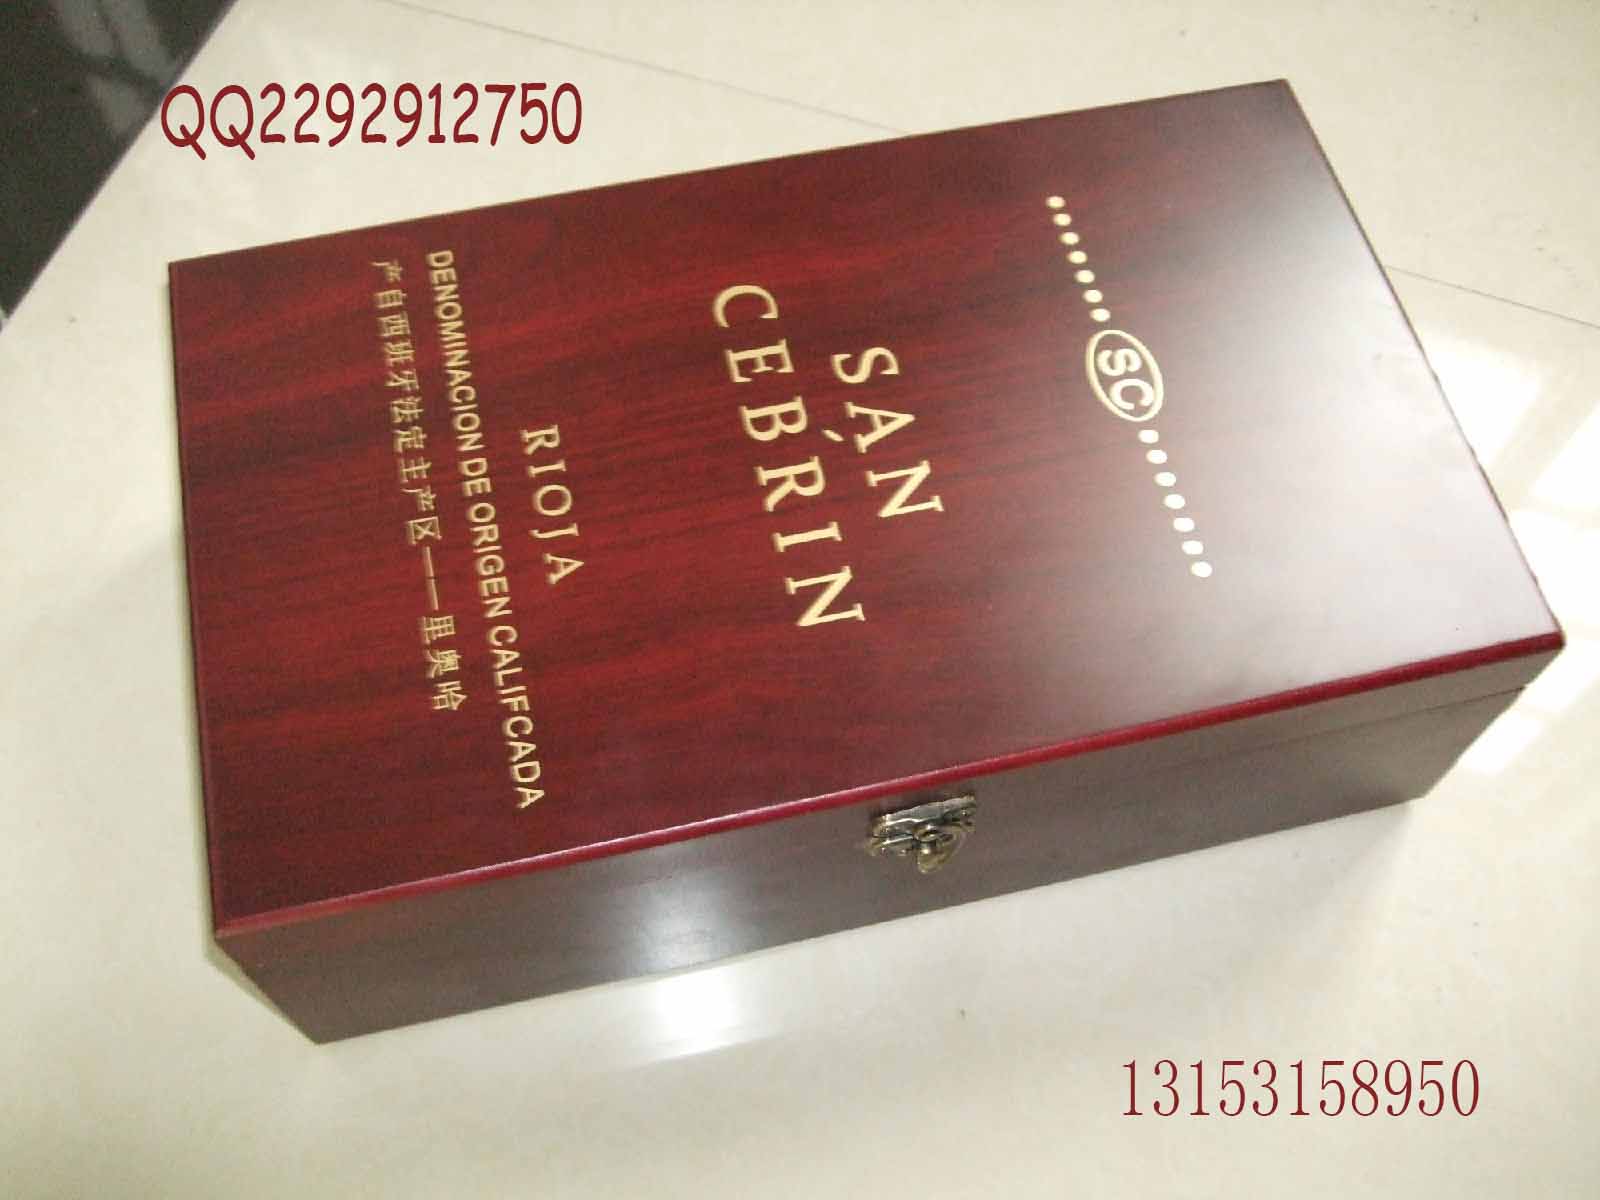 供应单支装高档皮质红酒盒、礼品盒、葡萄酒套装盒信息